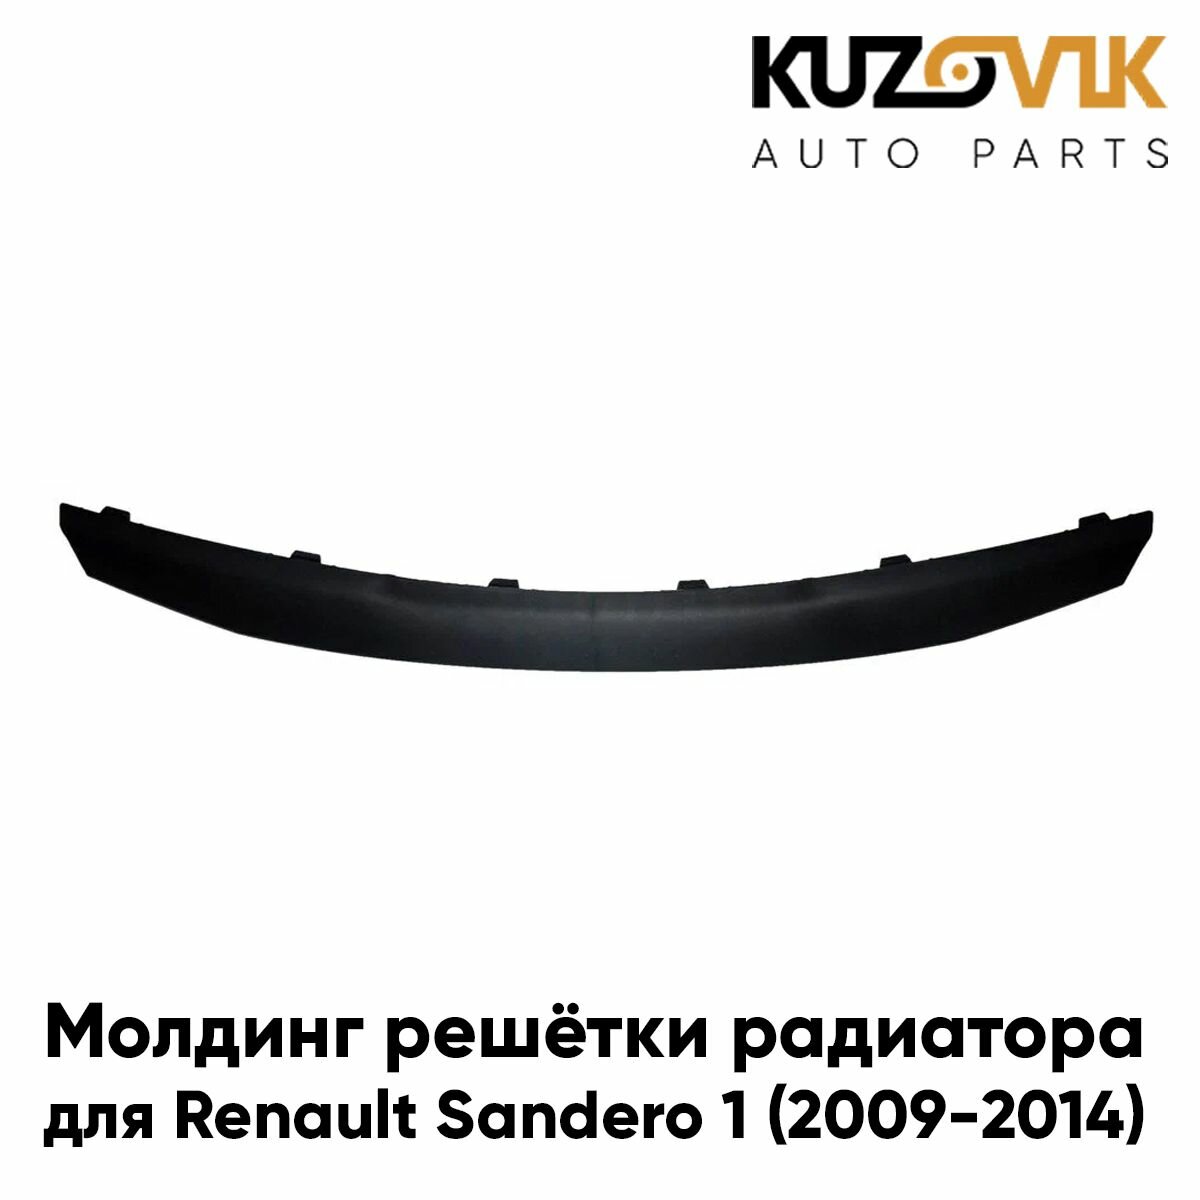 Молдинг решетки радиатора Renault Sandero 1 (2009-2014) черный матовый